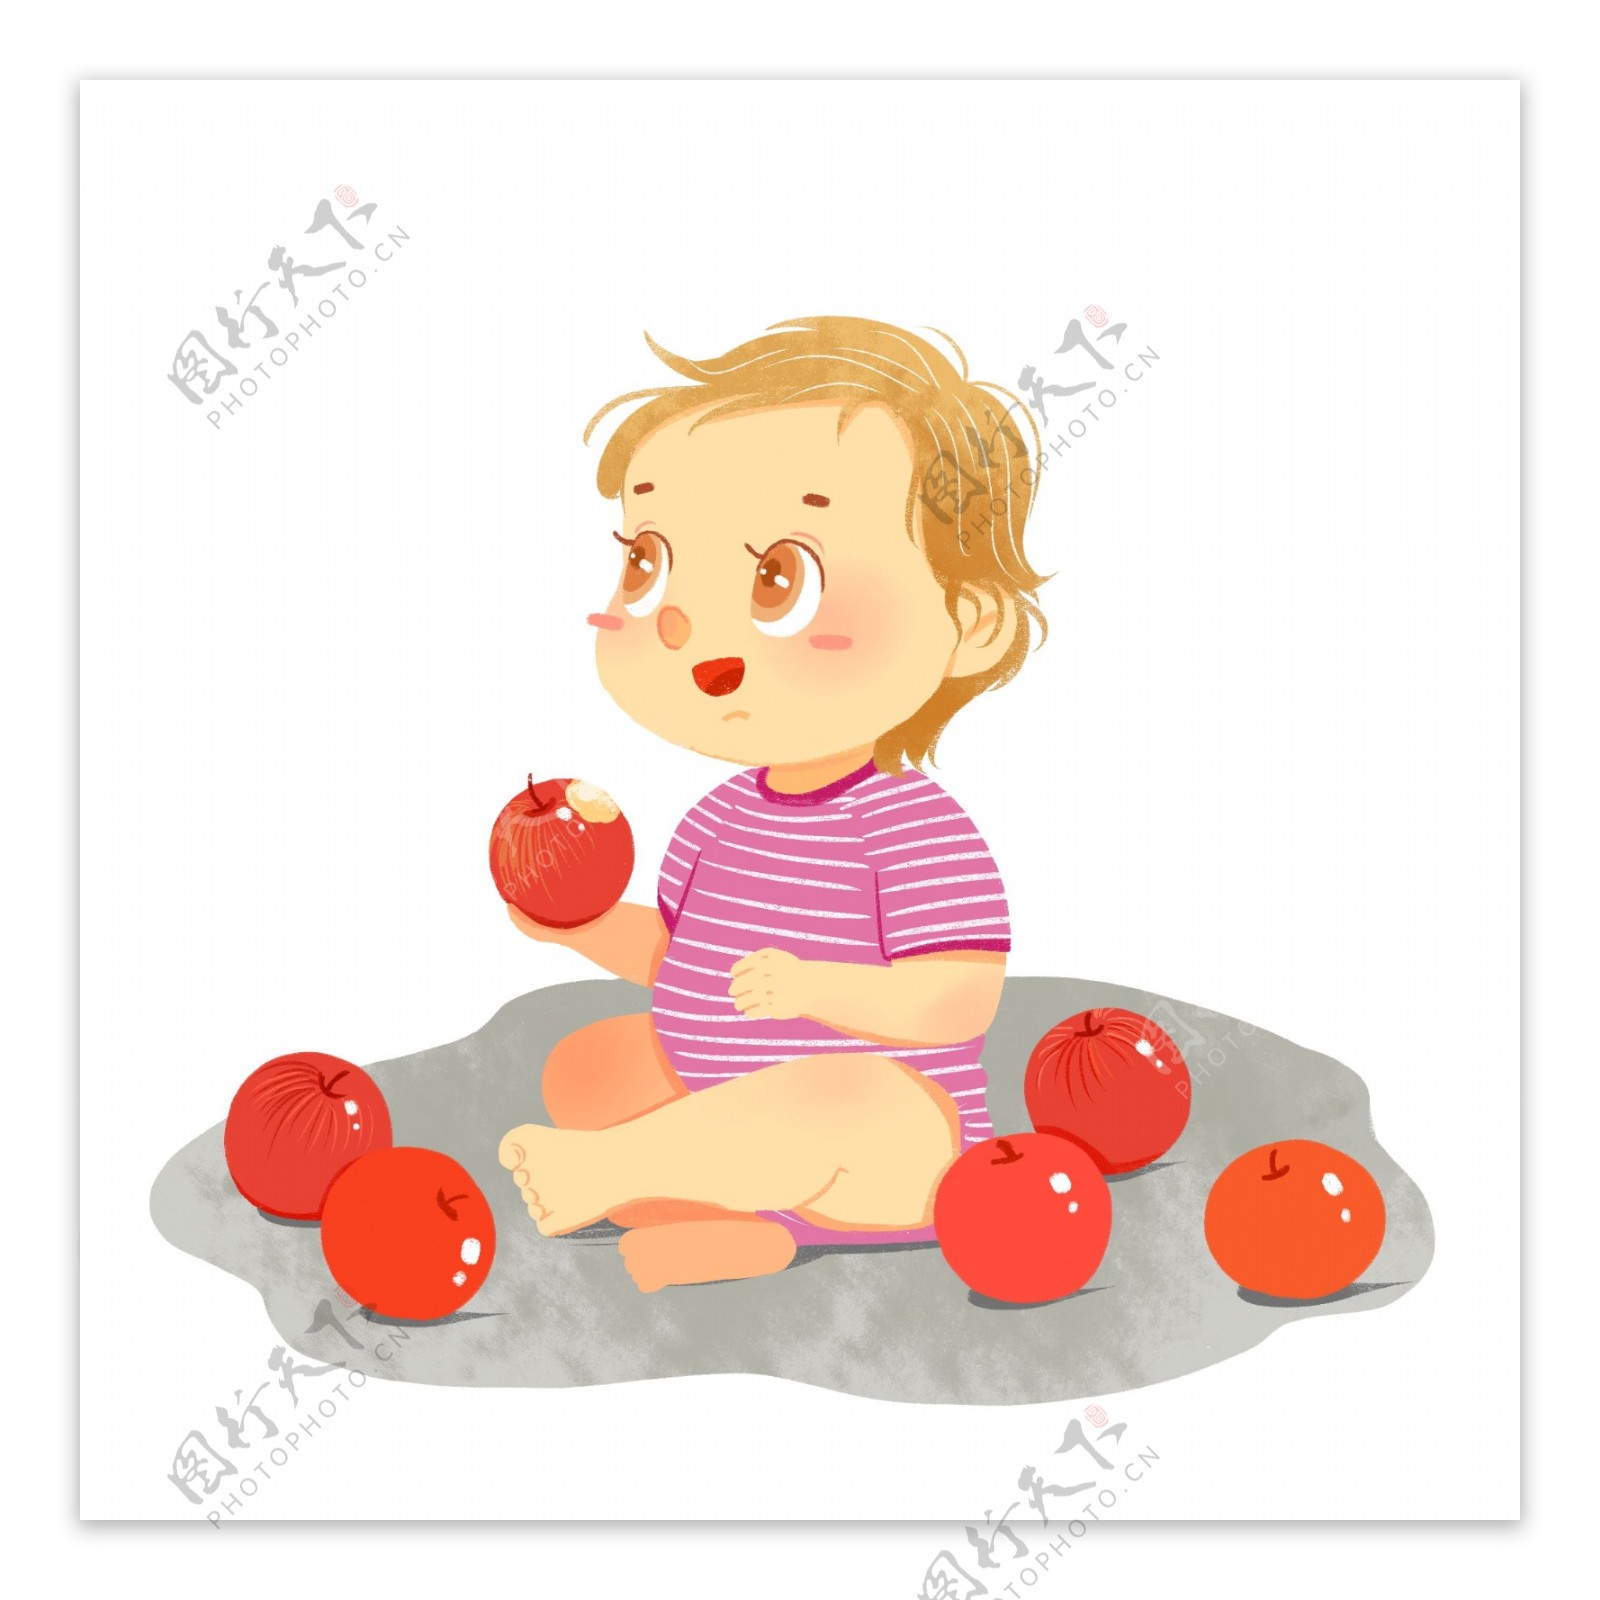 坐在地上吃苹果的婴儿